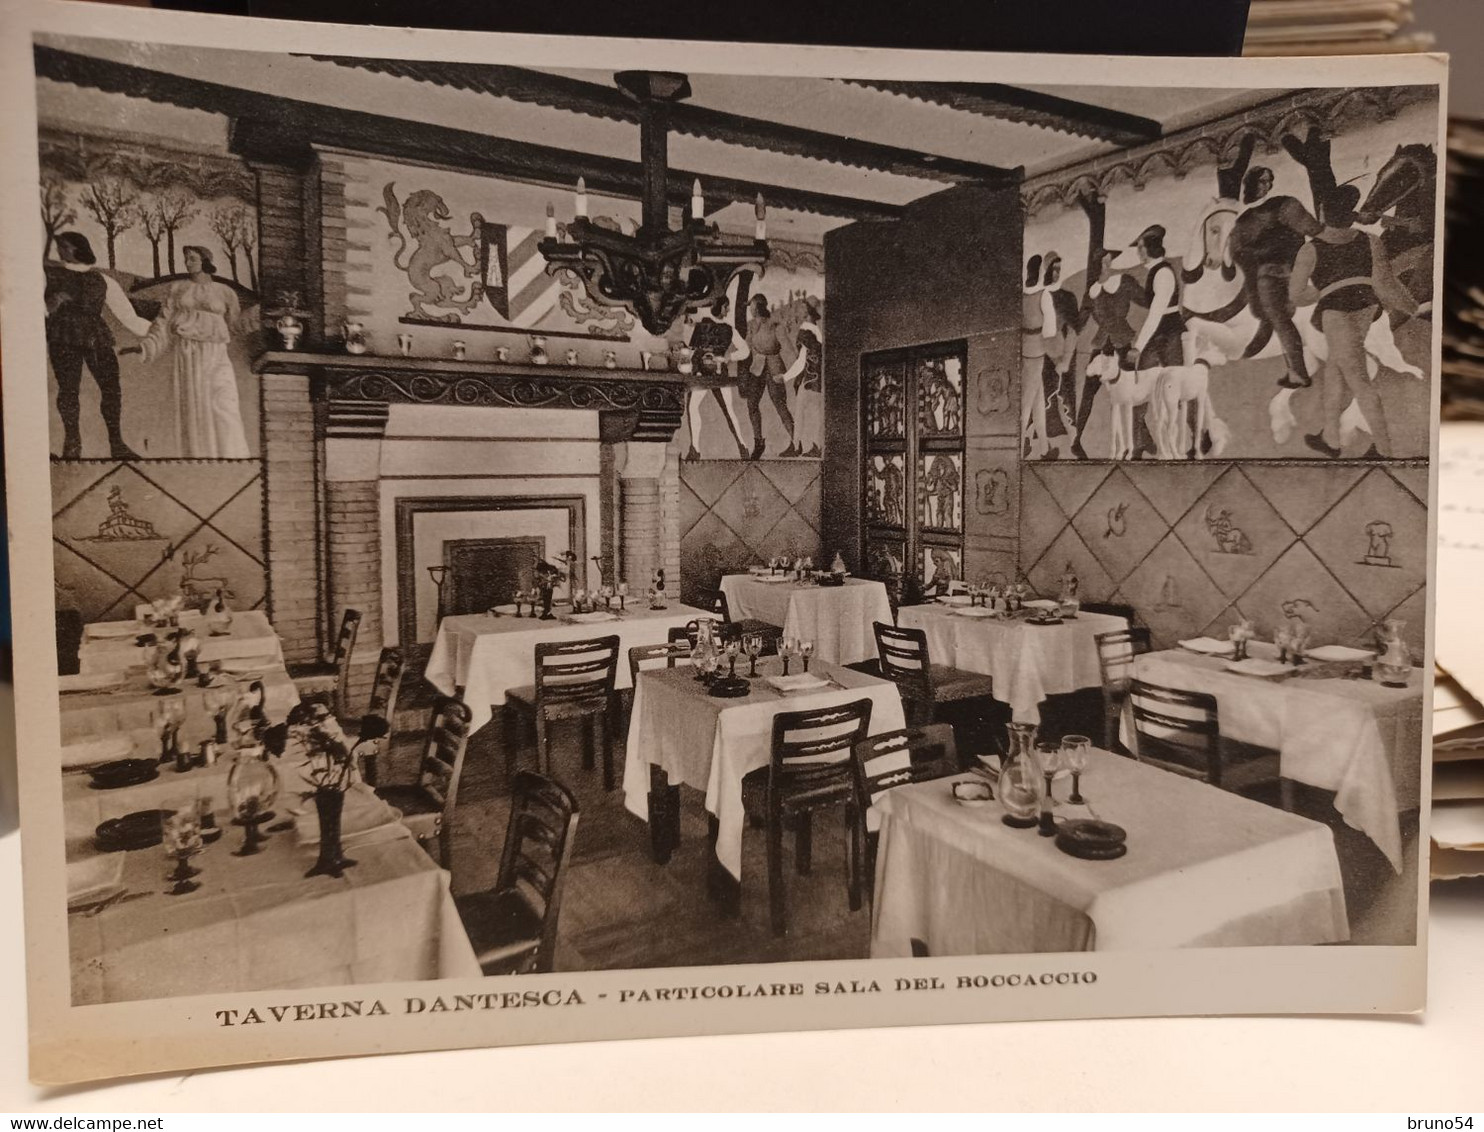 Cartolina Torino Taverna Dantesca Particolari Sala Del Boccaccio Via Nizza 5 ,1939 - Wirtschaften, Hotels & Restaurants